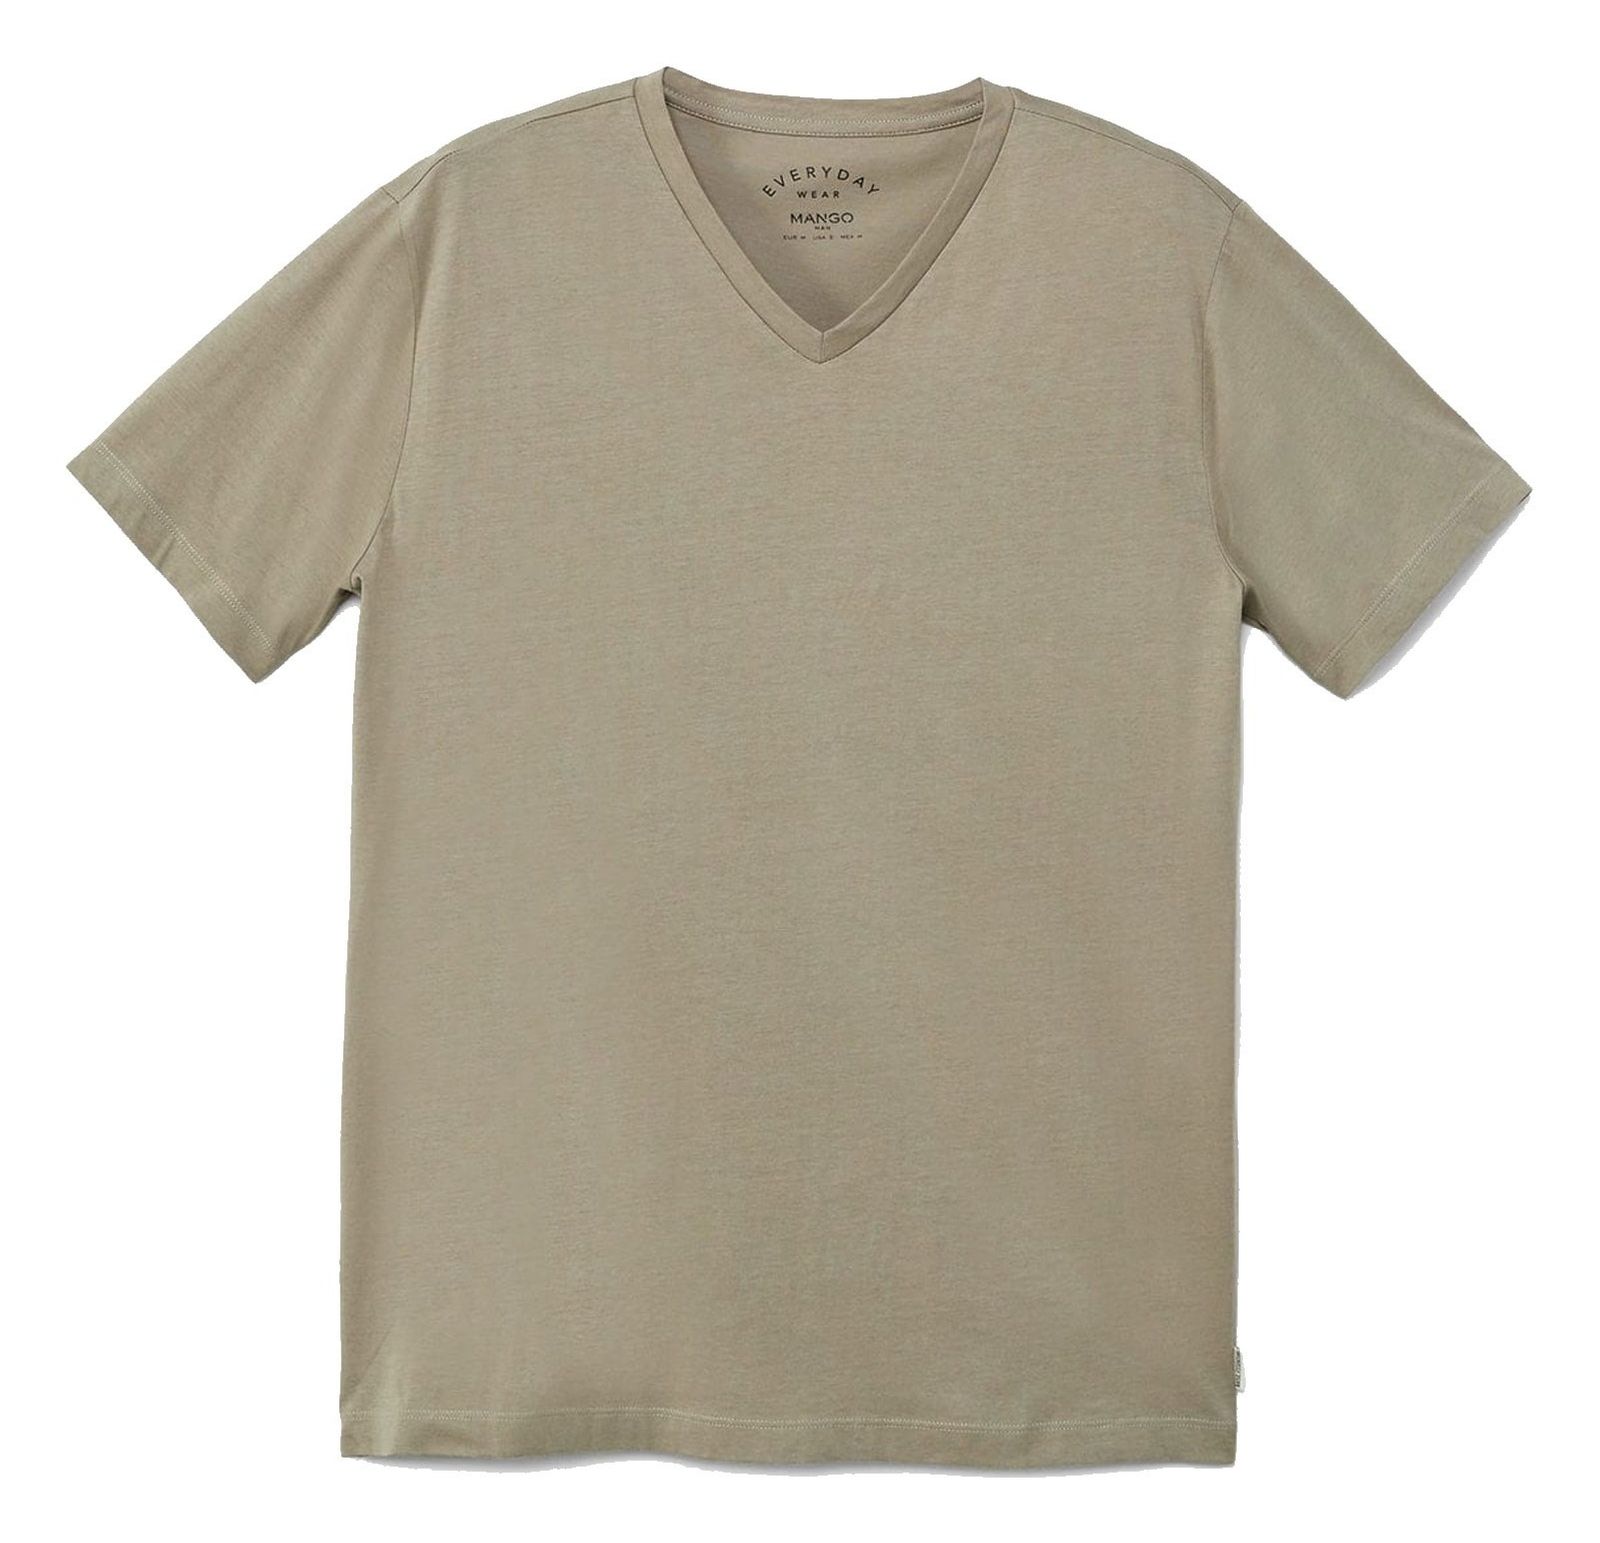 تی شرت نخی یقه هفت مردانه - مانگو - سبز - 2